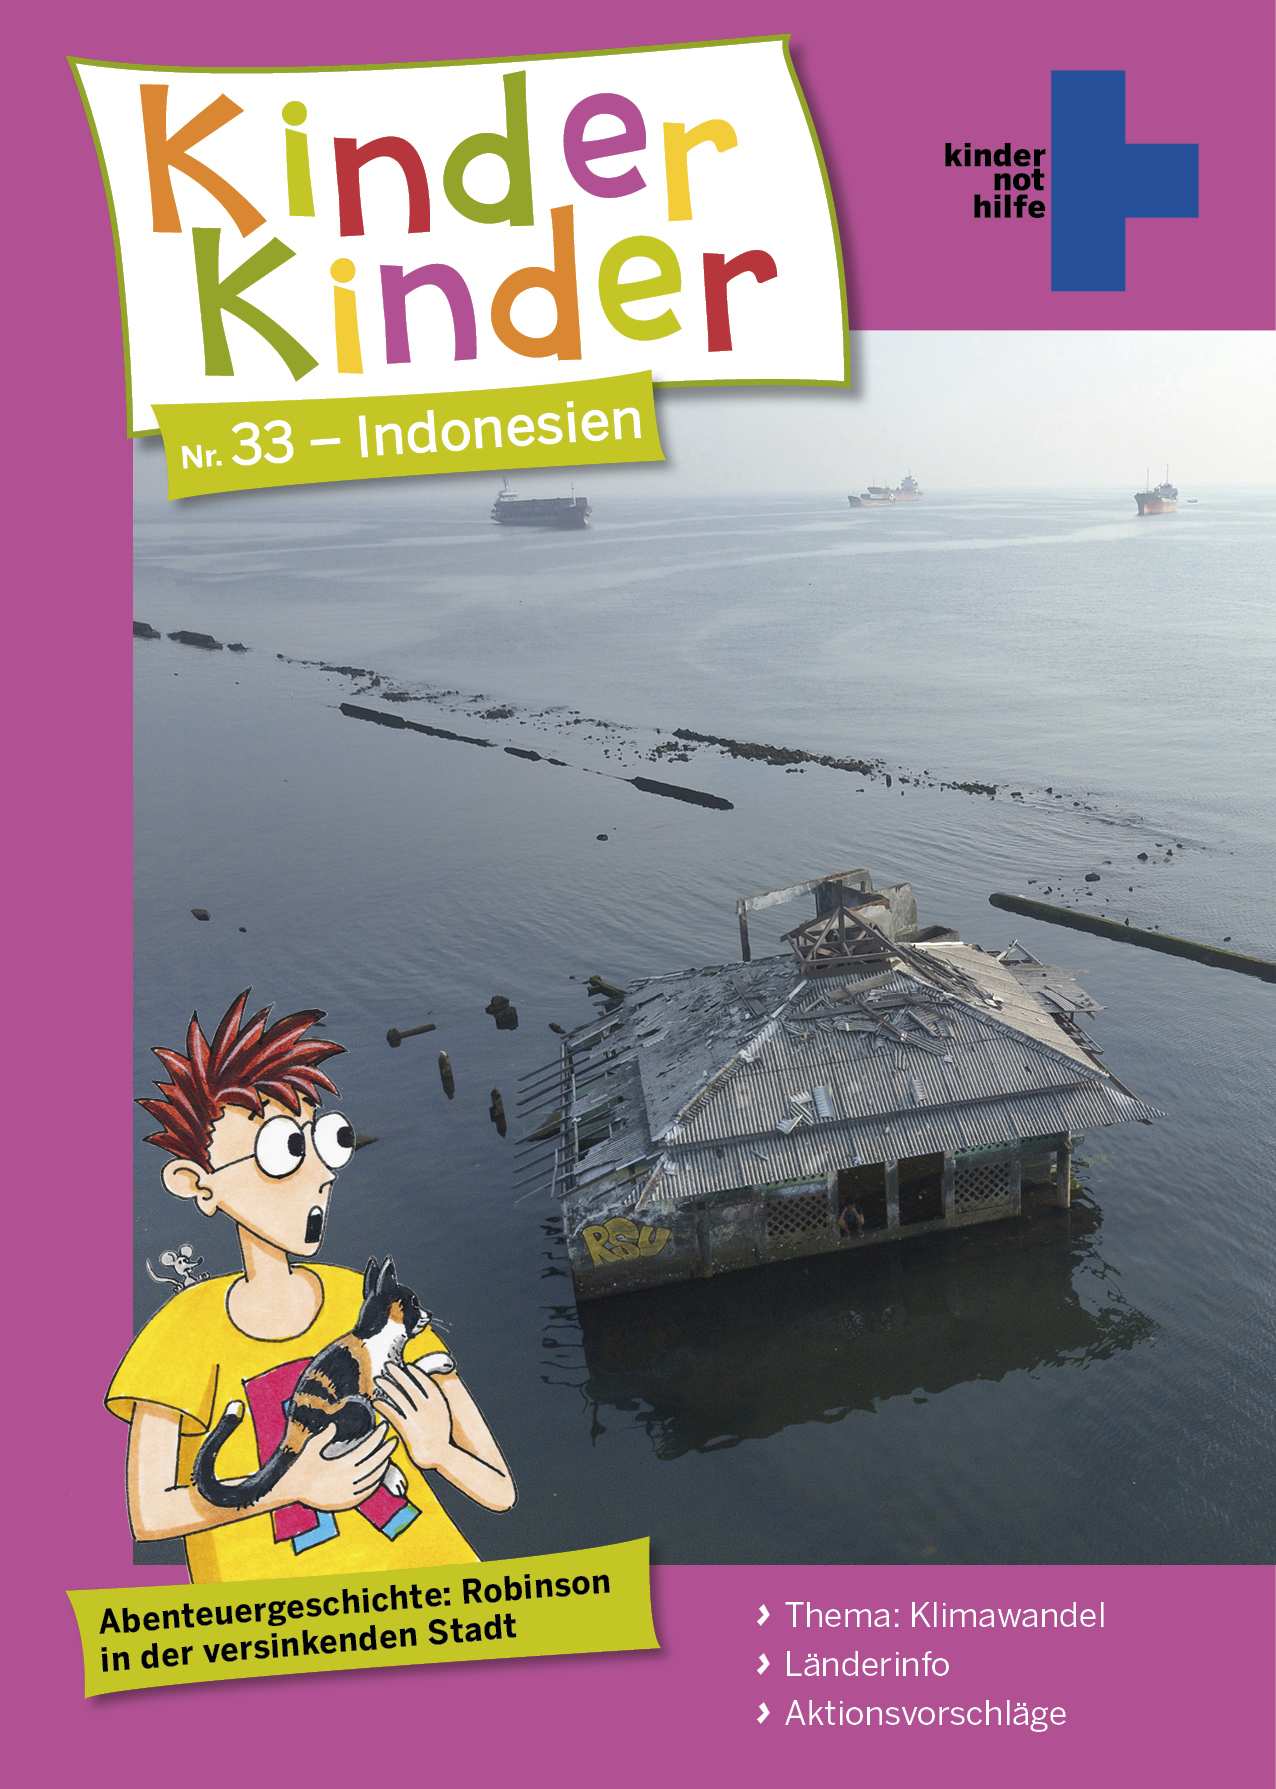 Titelseite von "Kinder, Kinder" 33 Indonesien (Quelle: Muhammad Fazlur und Peter Laux)